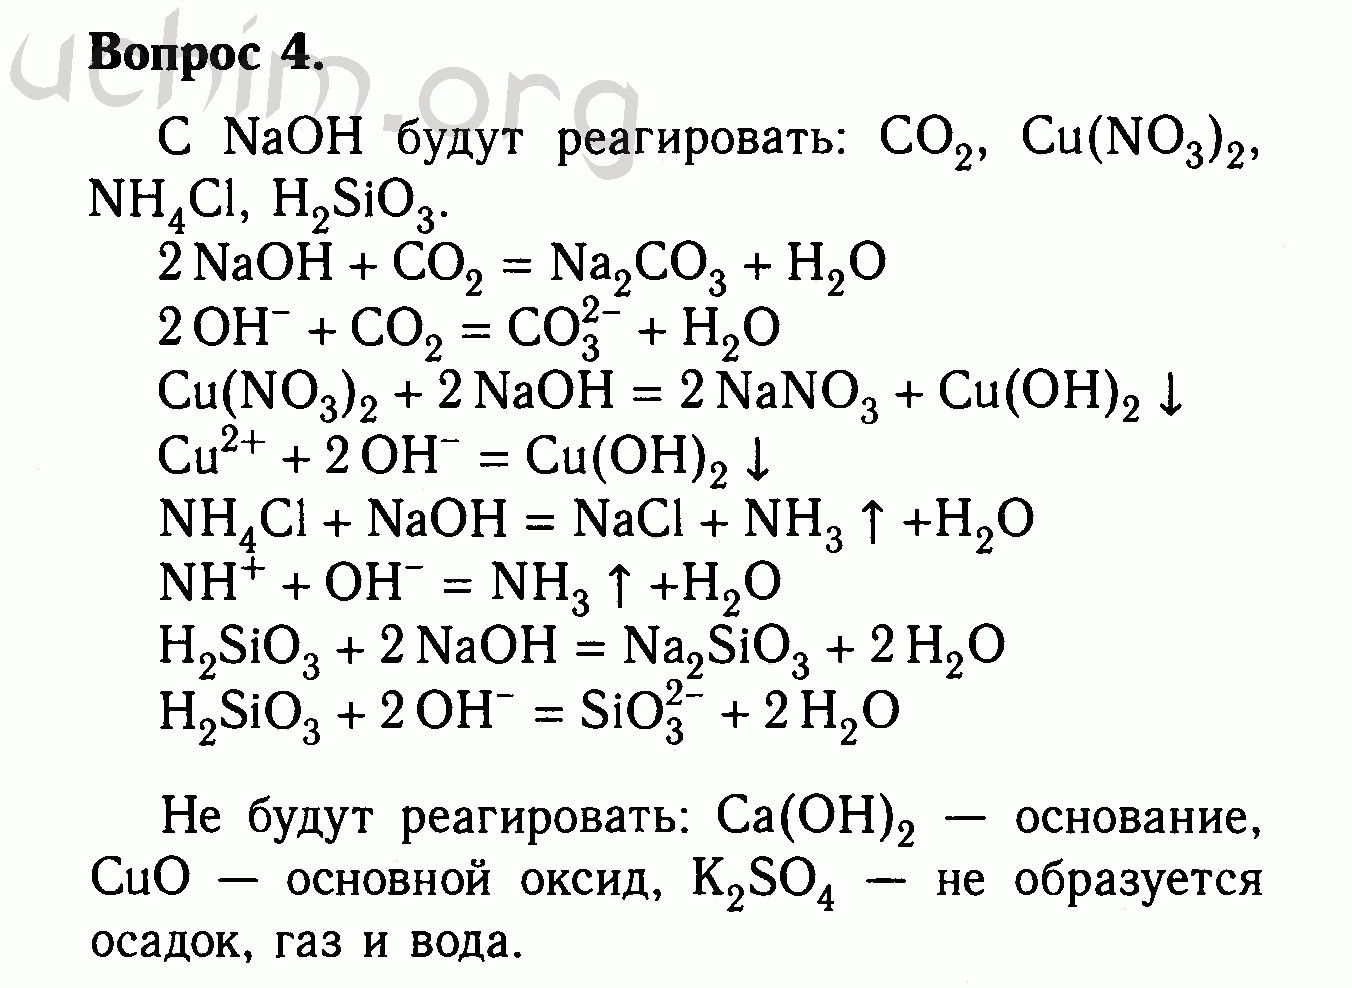 Нитрат алюминия реагирует с гидроксидом натрия. Оксид меди + со4 Купрума. Оксид меди 2 плюс гидроксид натрия. С гидроксидом натрия реагирует оксид меди 2. Магний плюс фосфат меди 2.